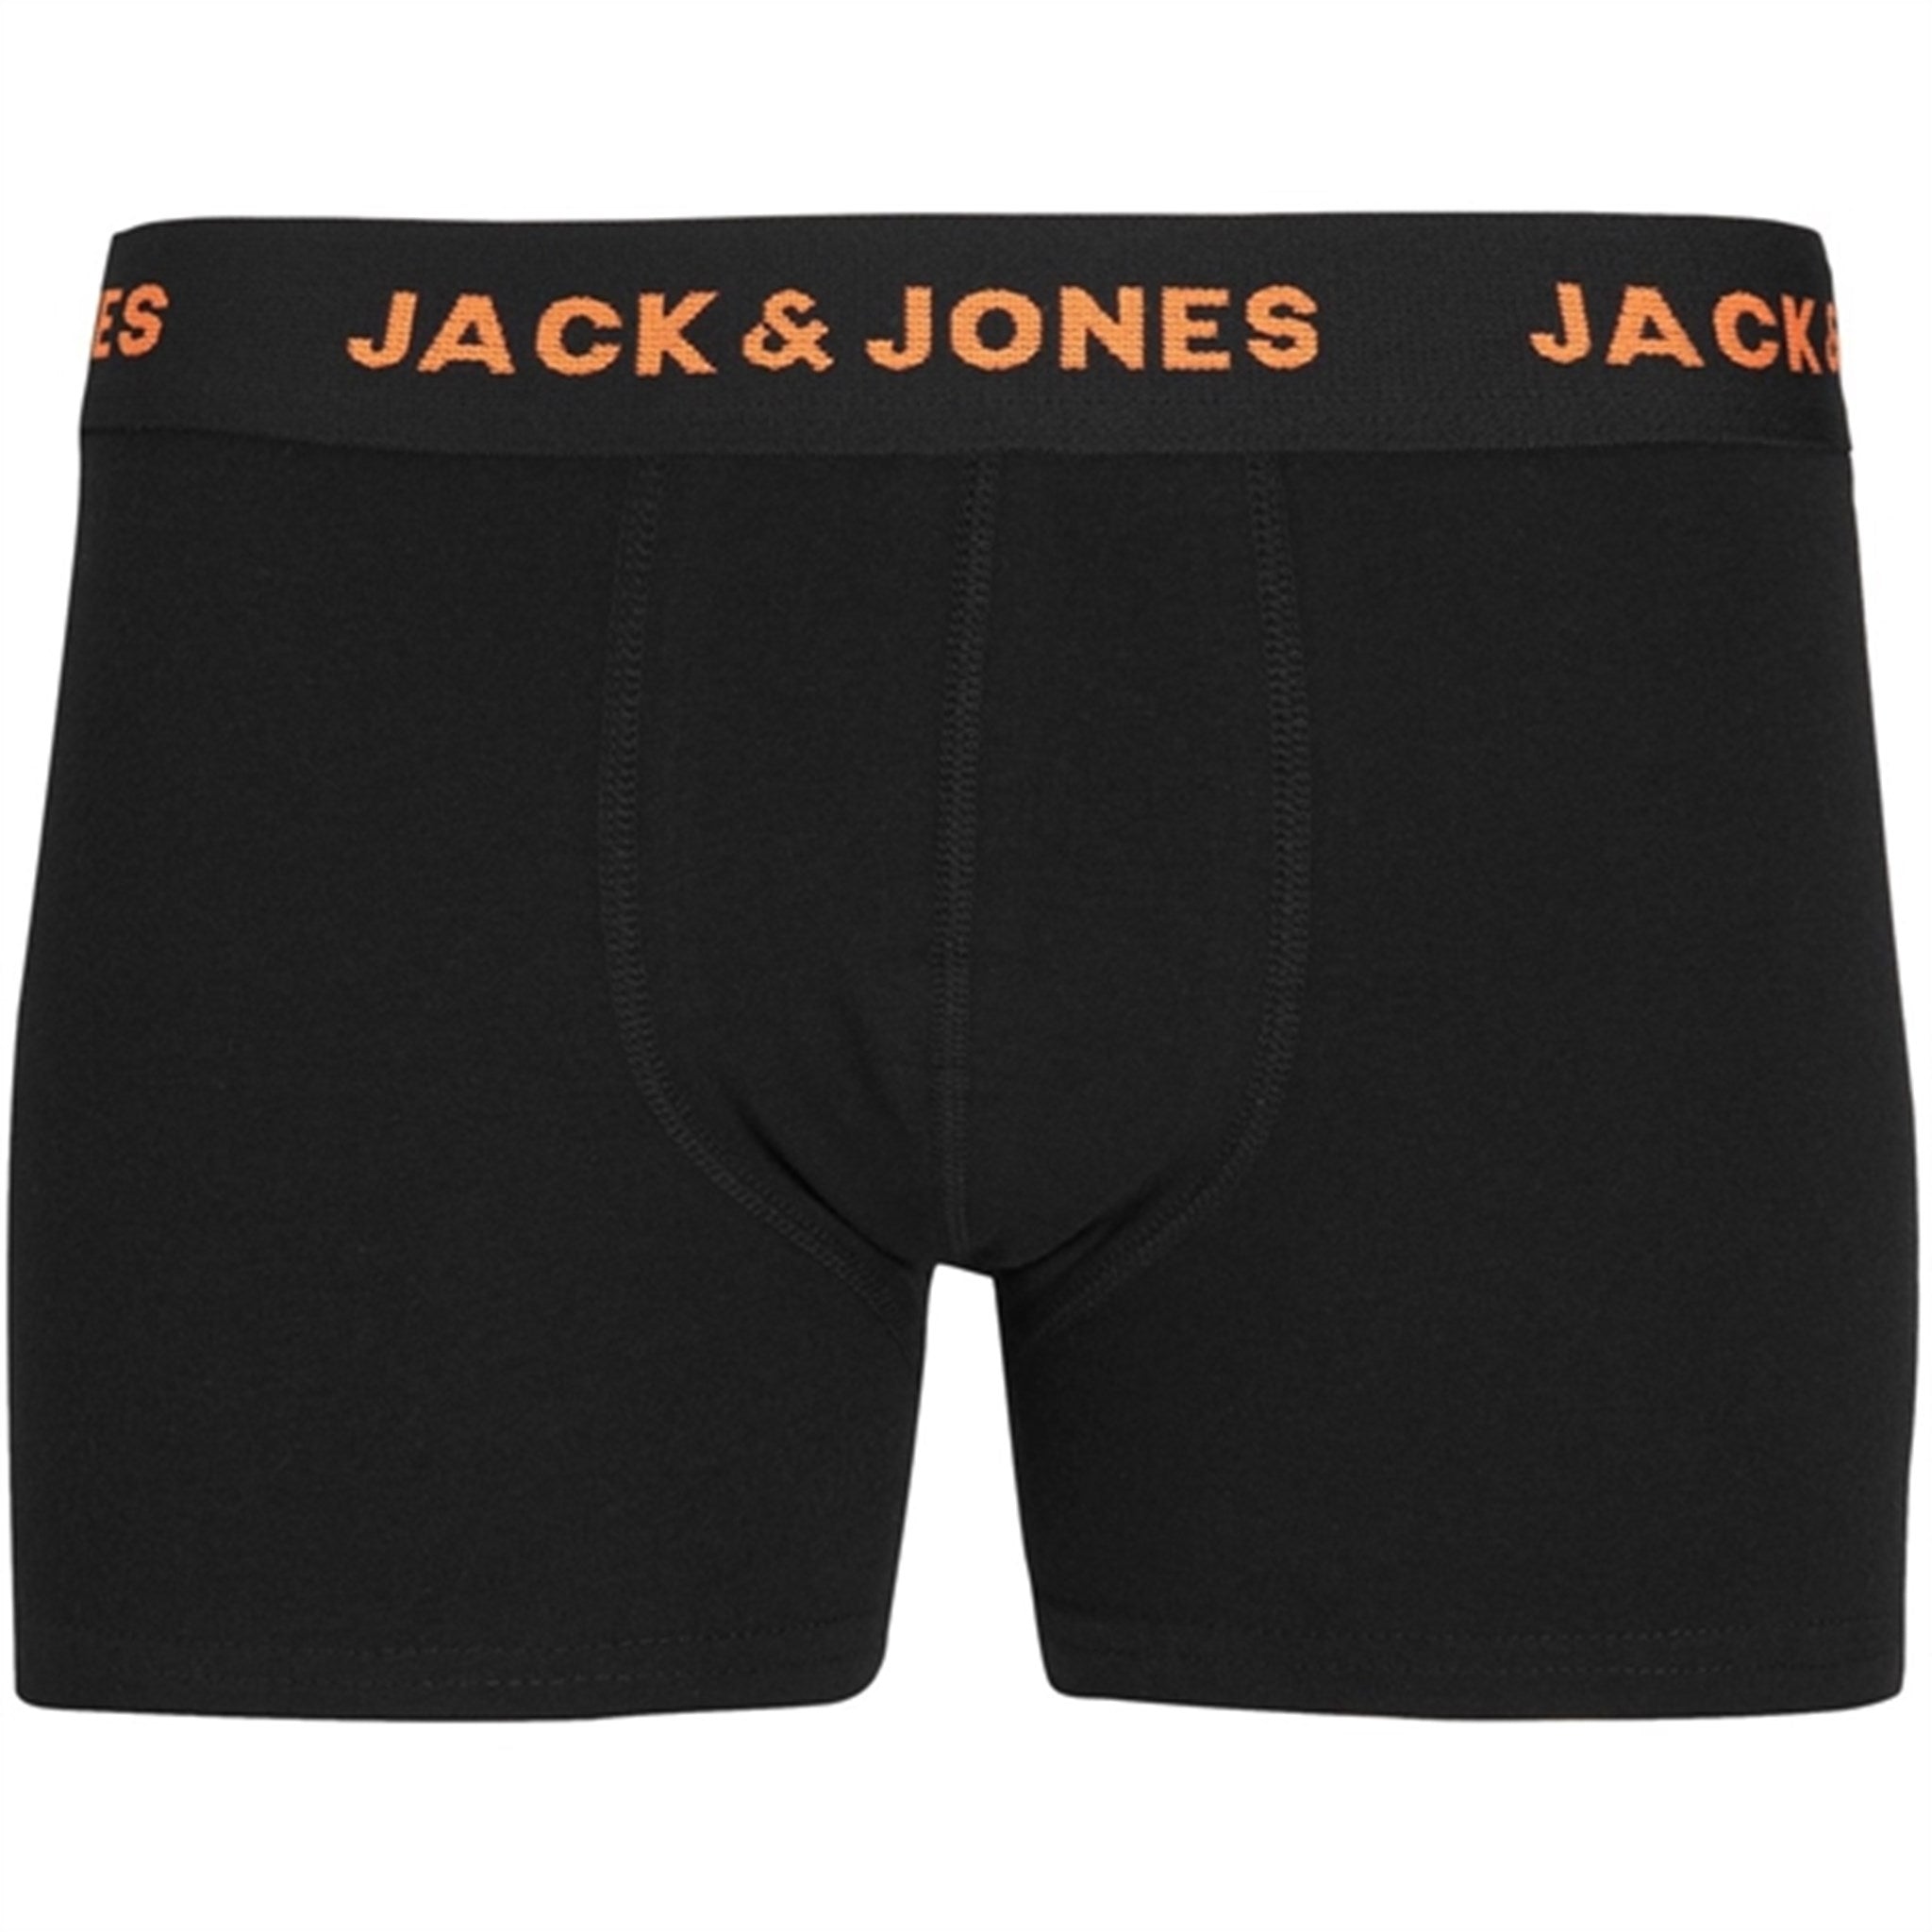 Jack & Jones Junior Black Basic Bokser shorts 7-pakning Noos 5